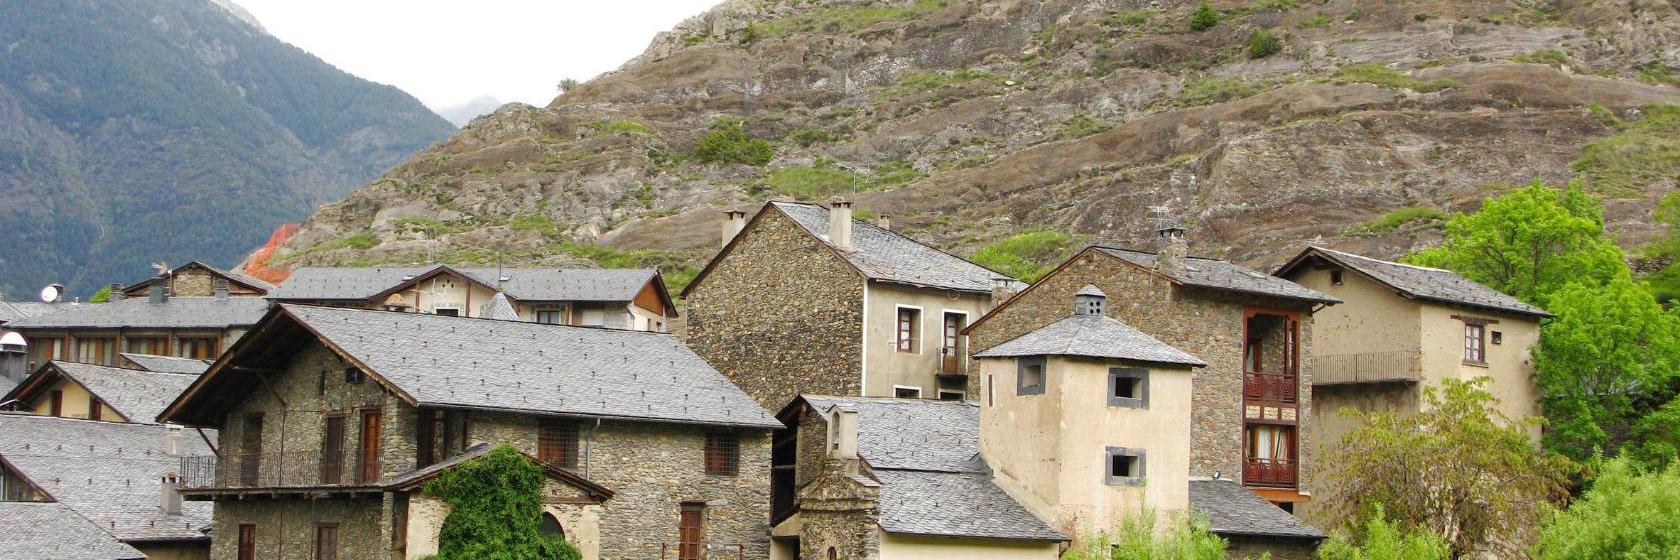 10 Best La Massana Hotels, Andorra (From $79)